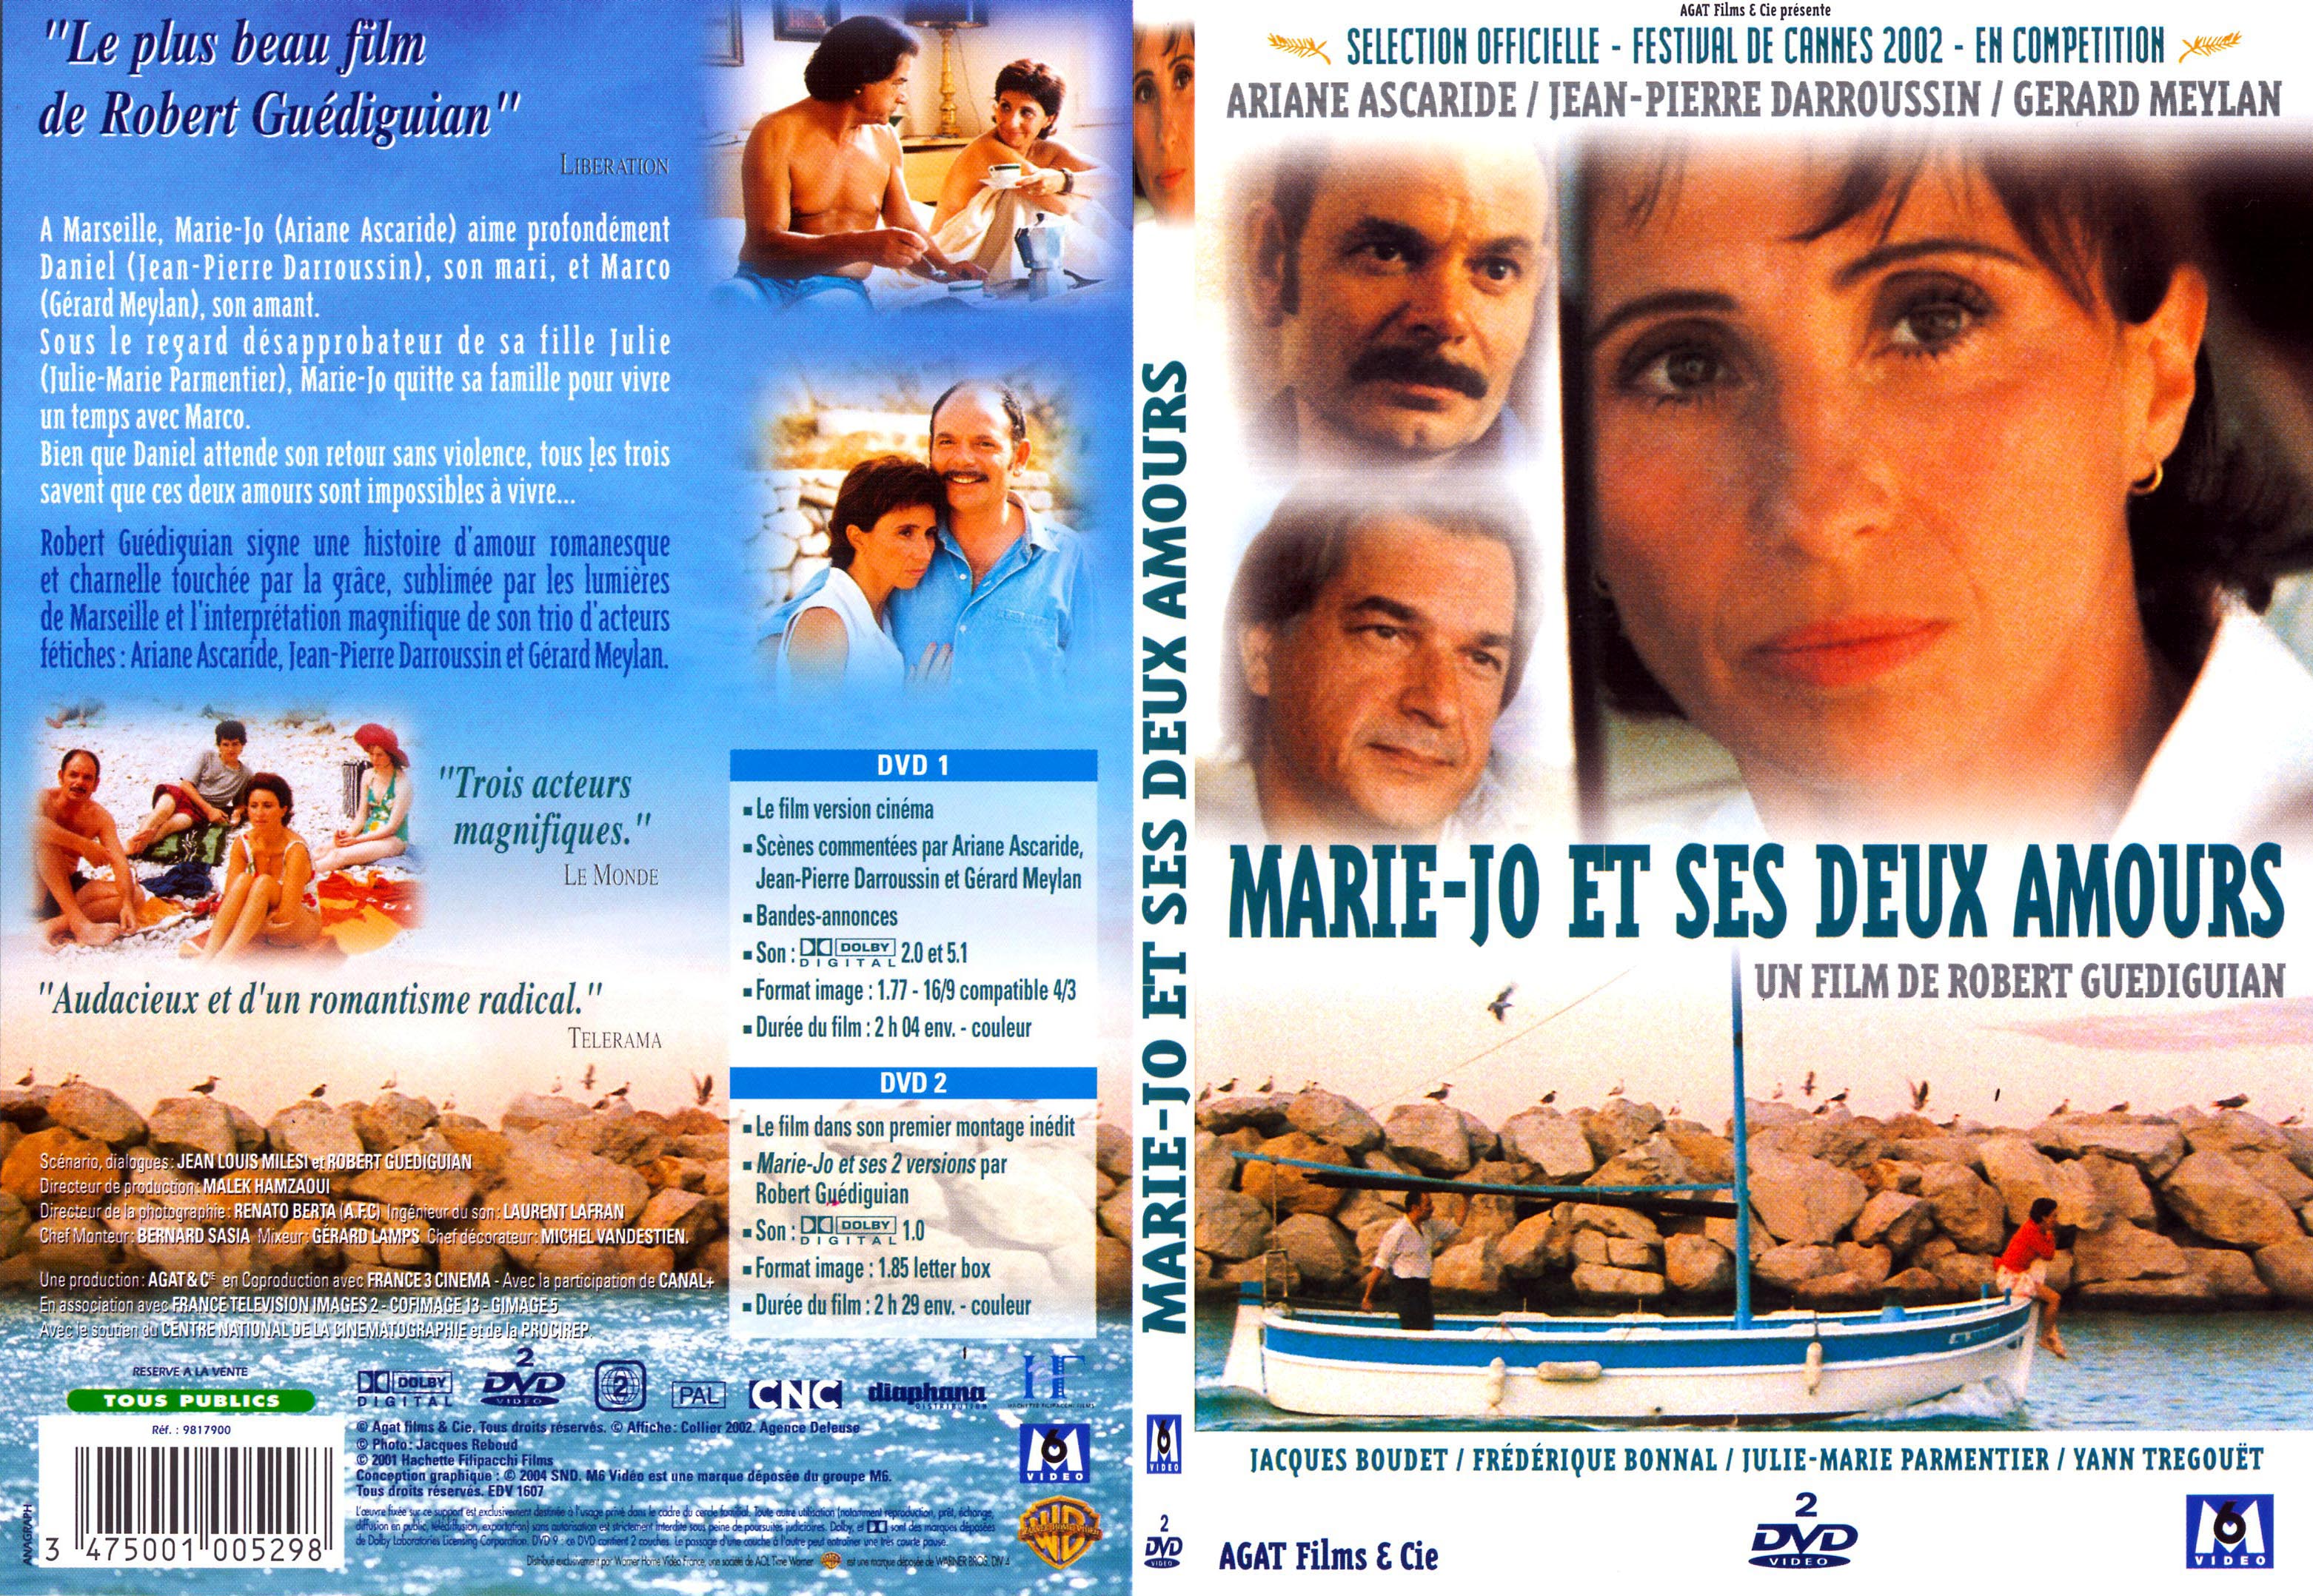 Jaquette DVD Marie-Jo et ses deux amours - SLIM